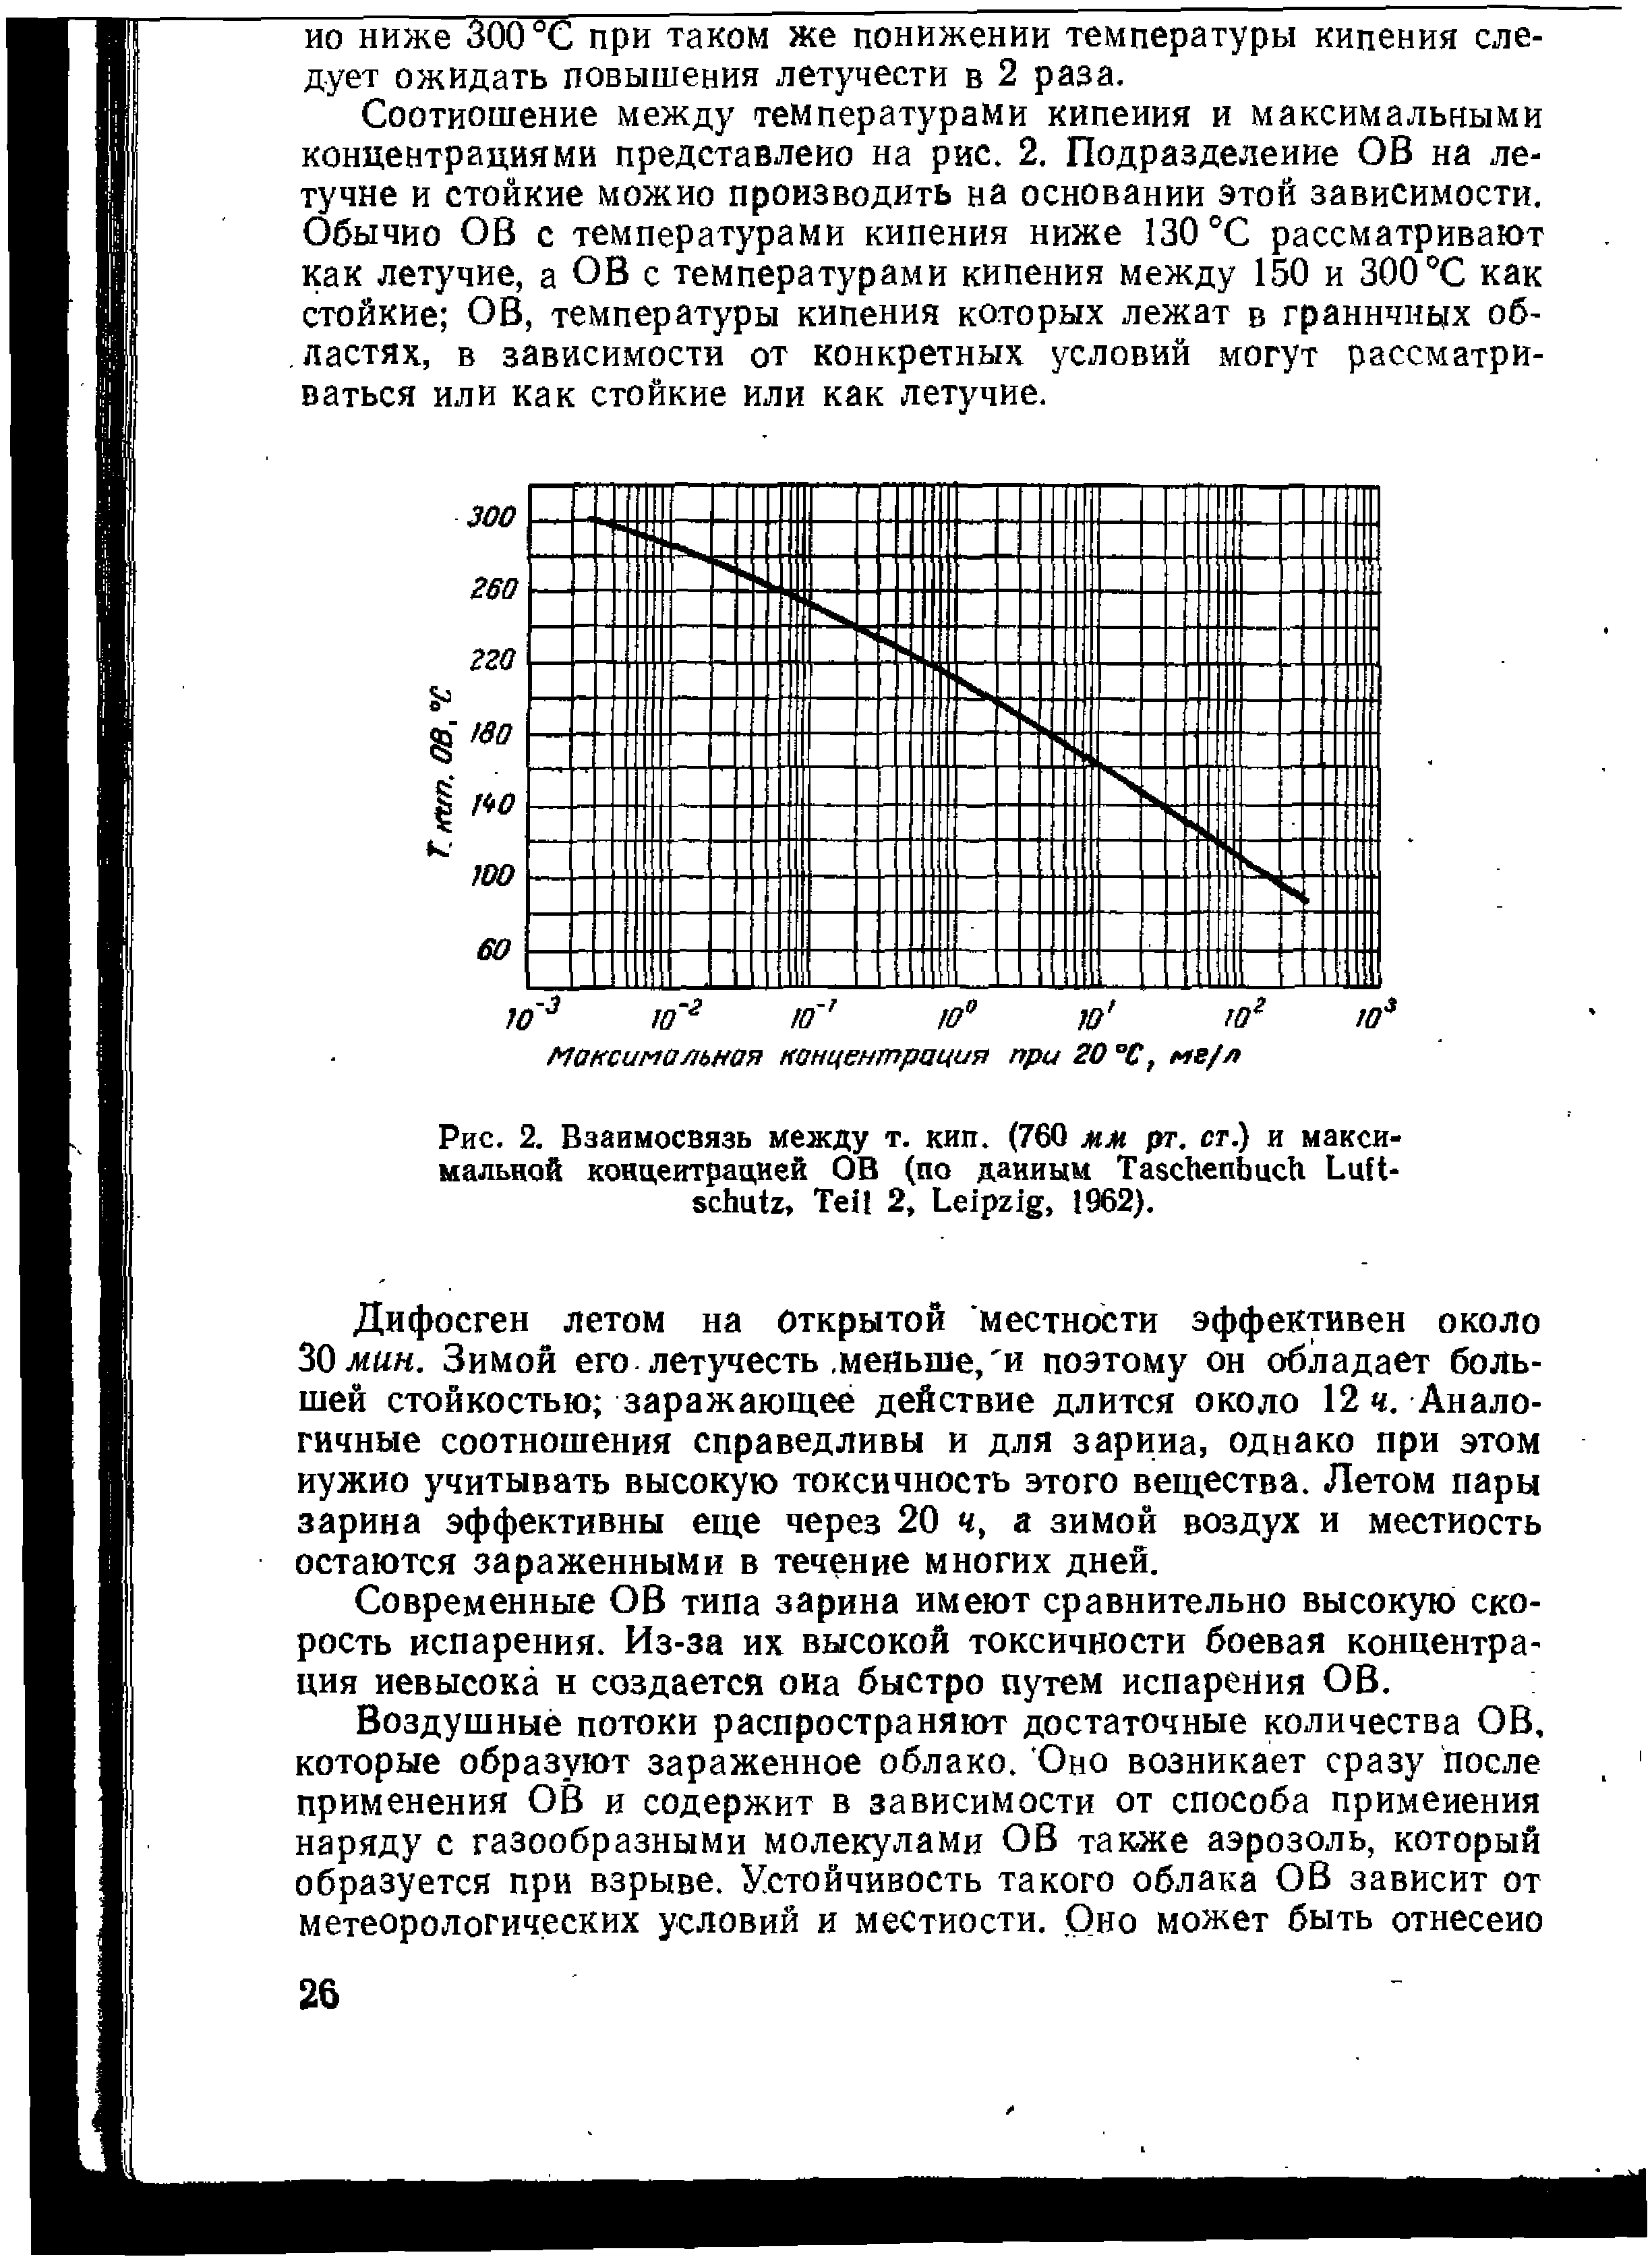 Рис. 2. Взаимосвязь между т. кип. (760 мм рт. ст.) и максимальной концентрацией ОВ (по данным T L , T 2, L , 1962).